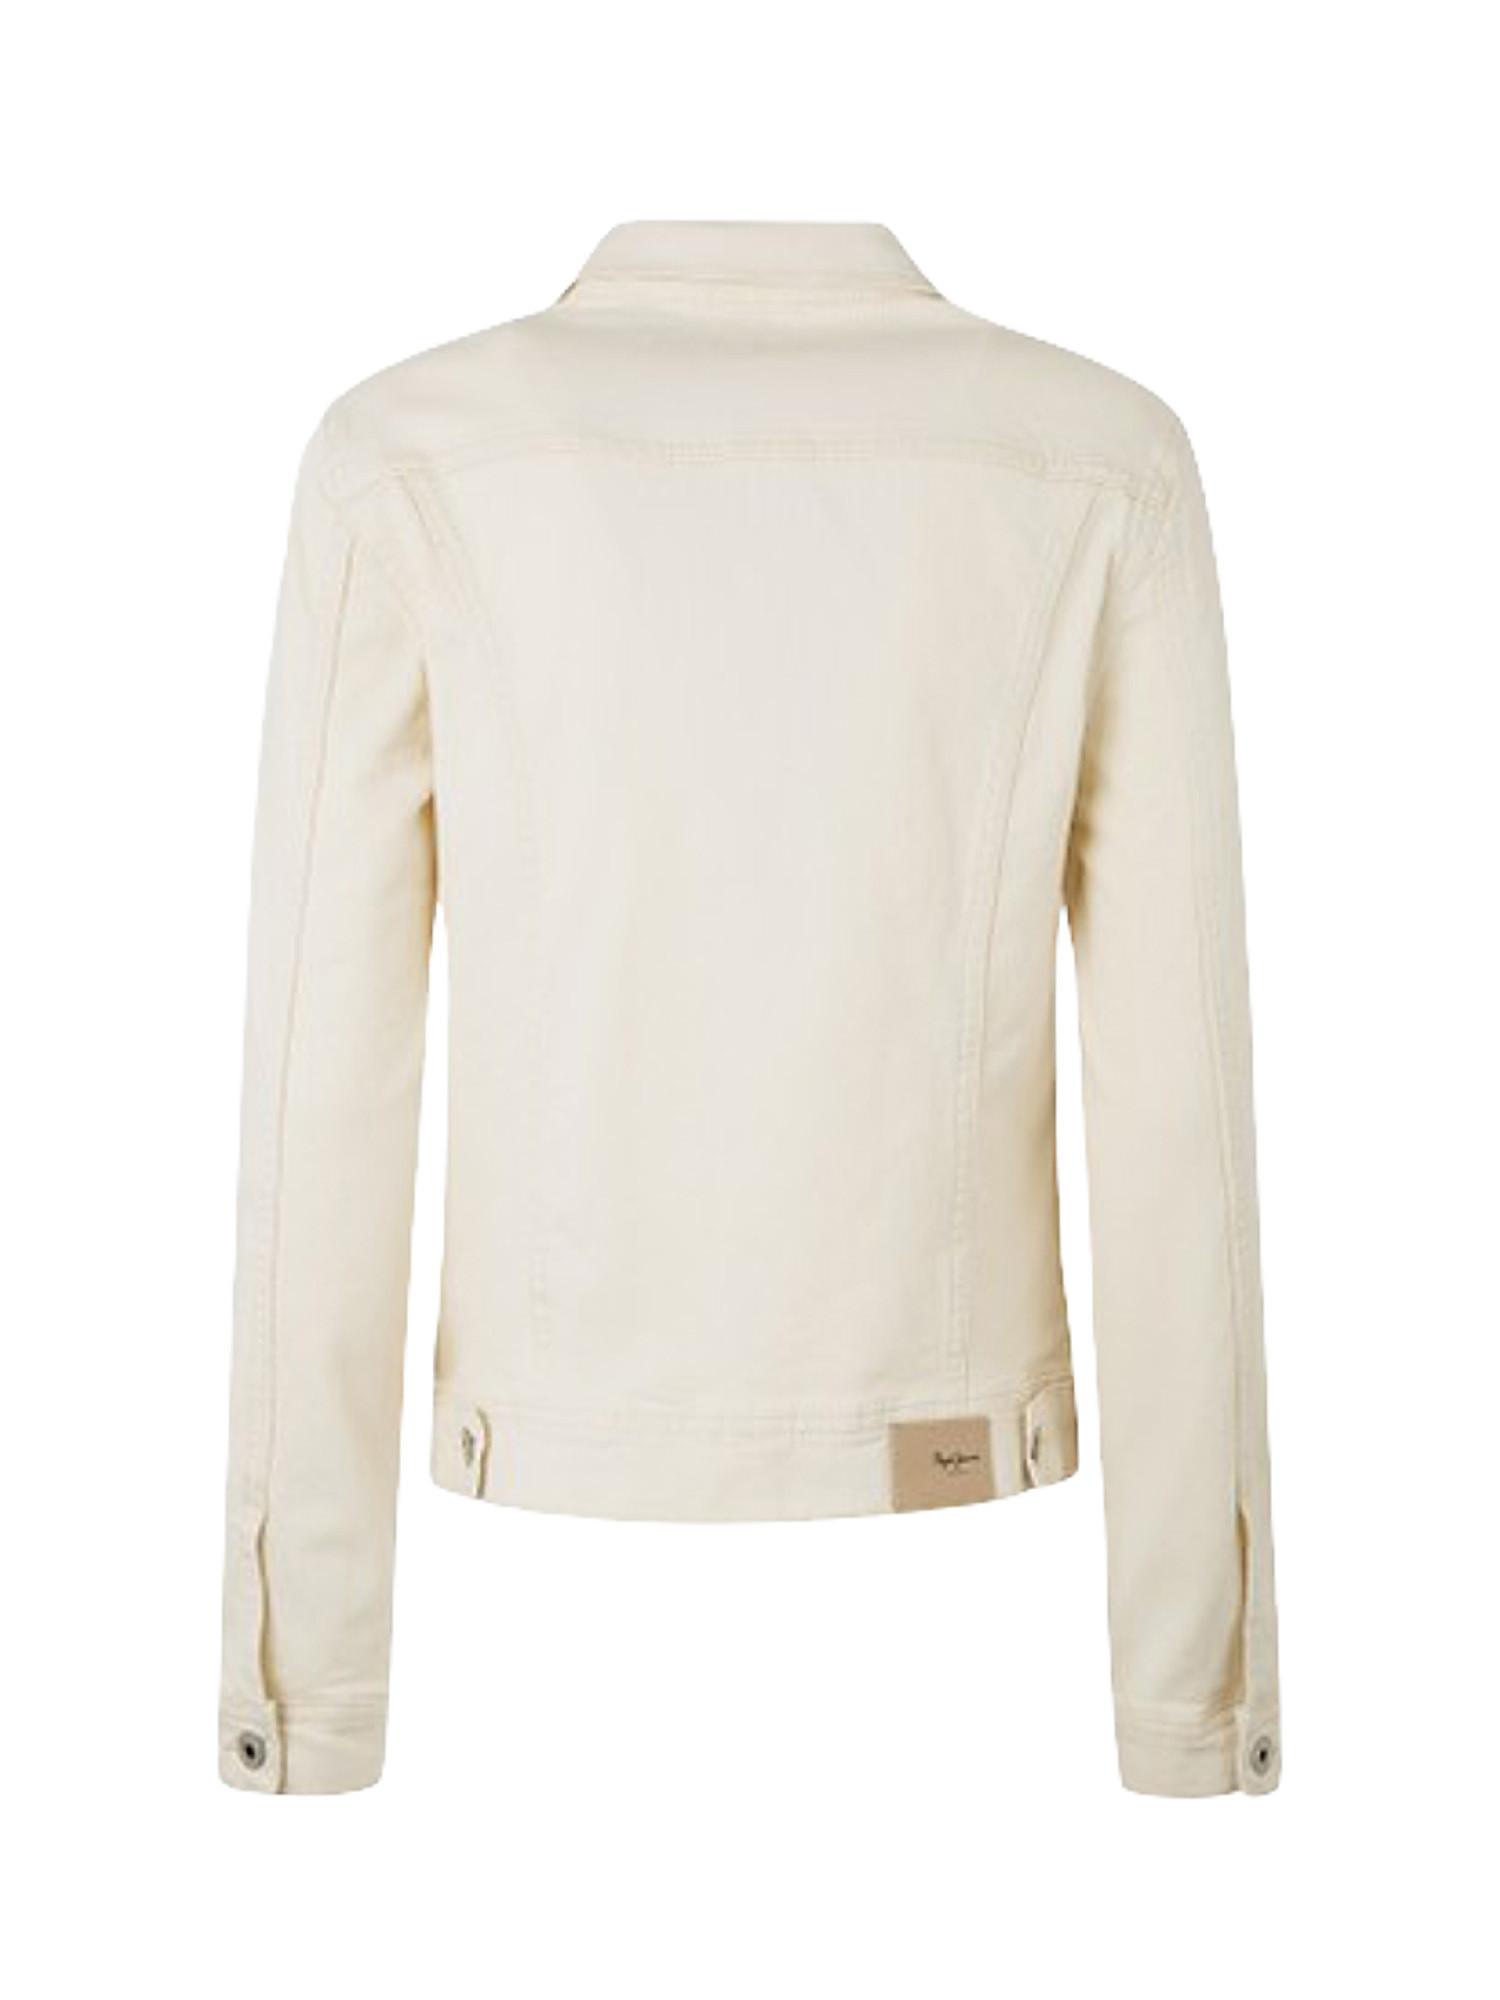 Thrift denim jacket, White Cream, large image number 1